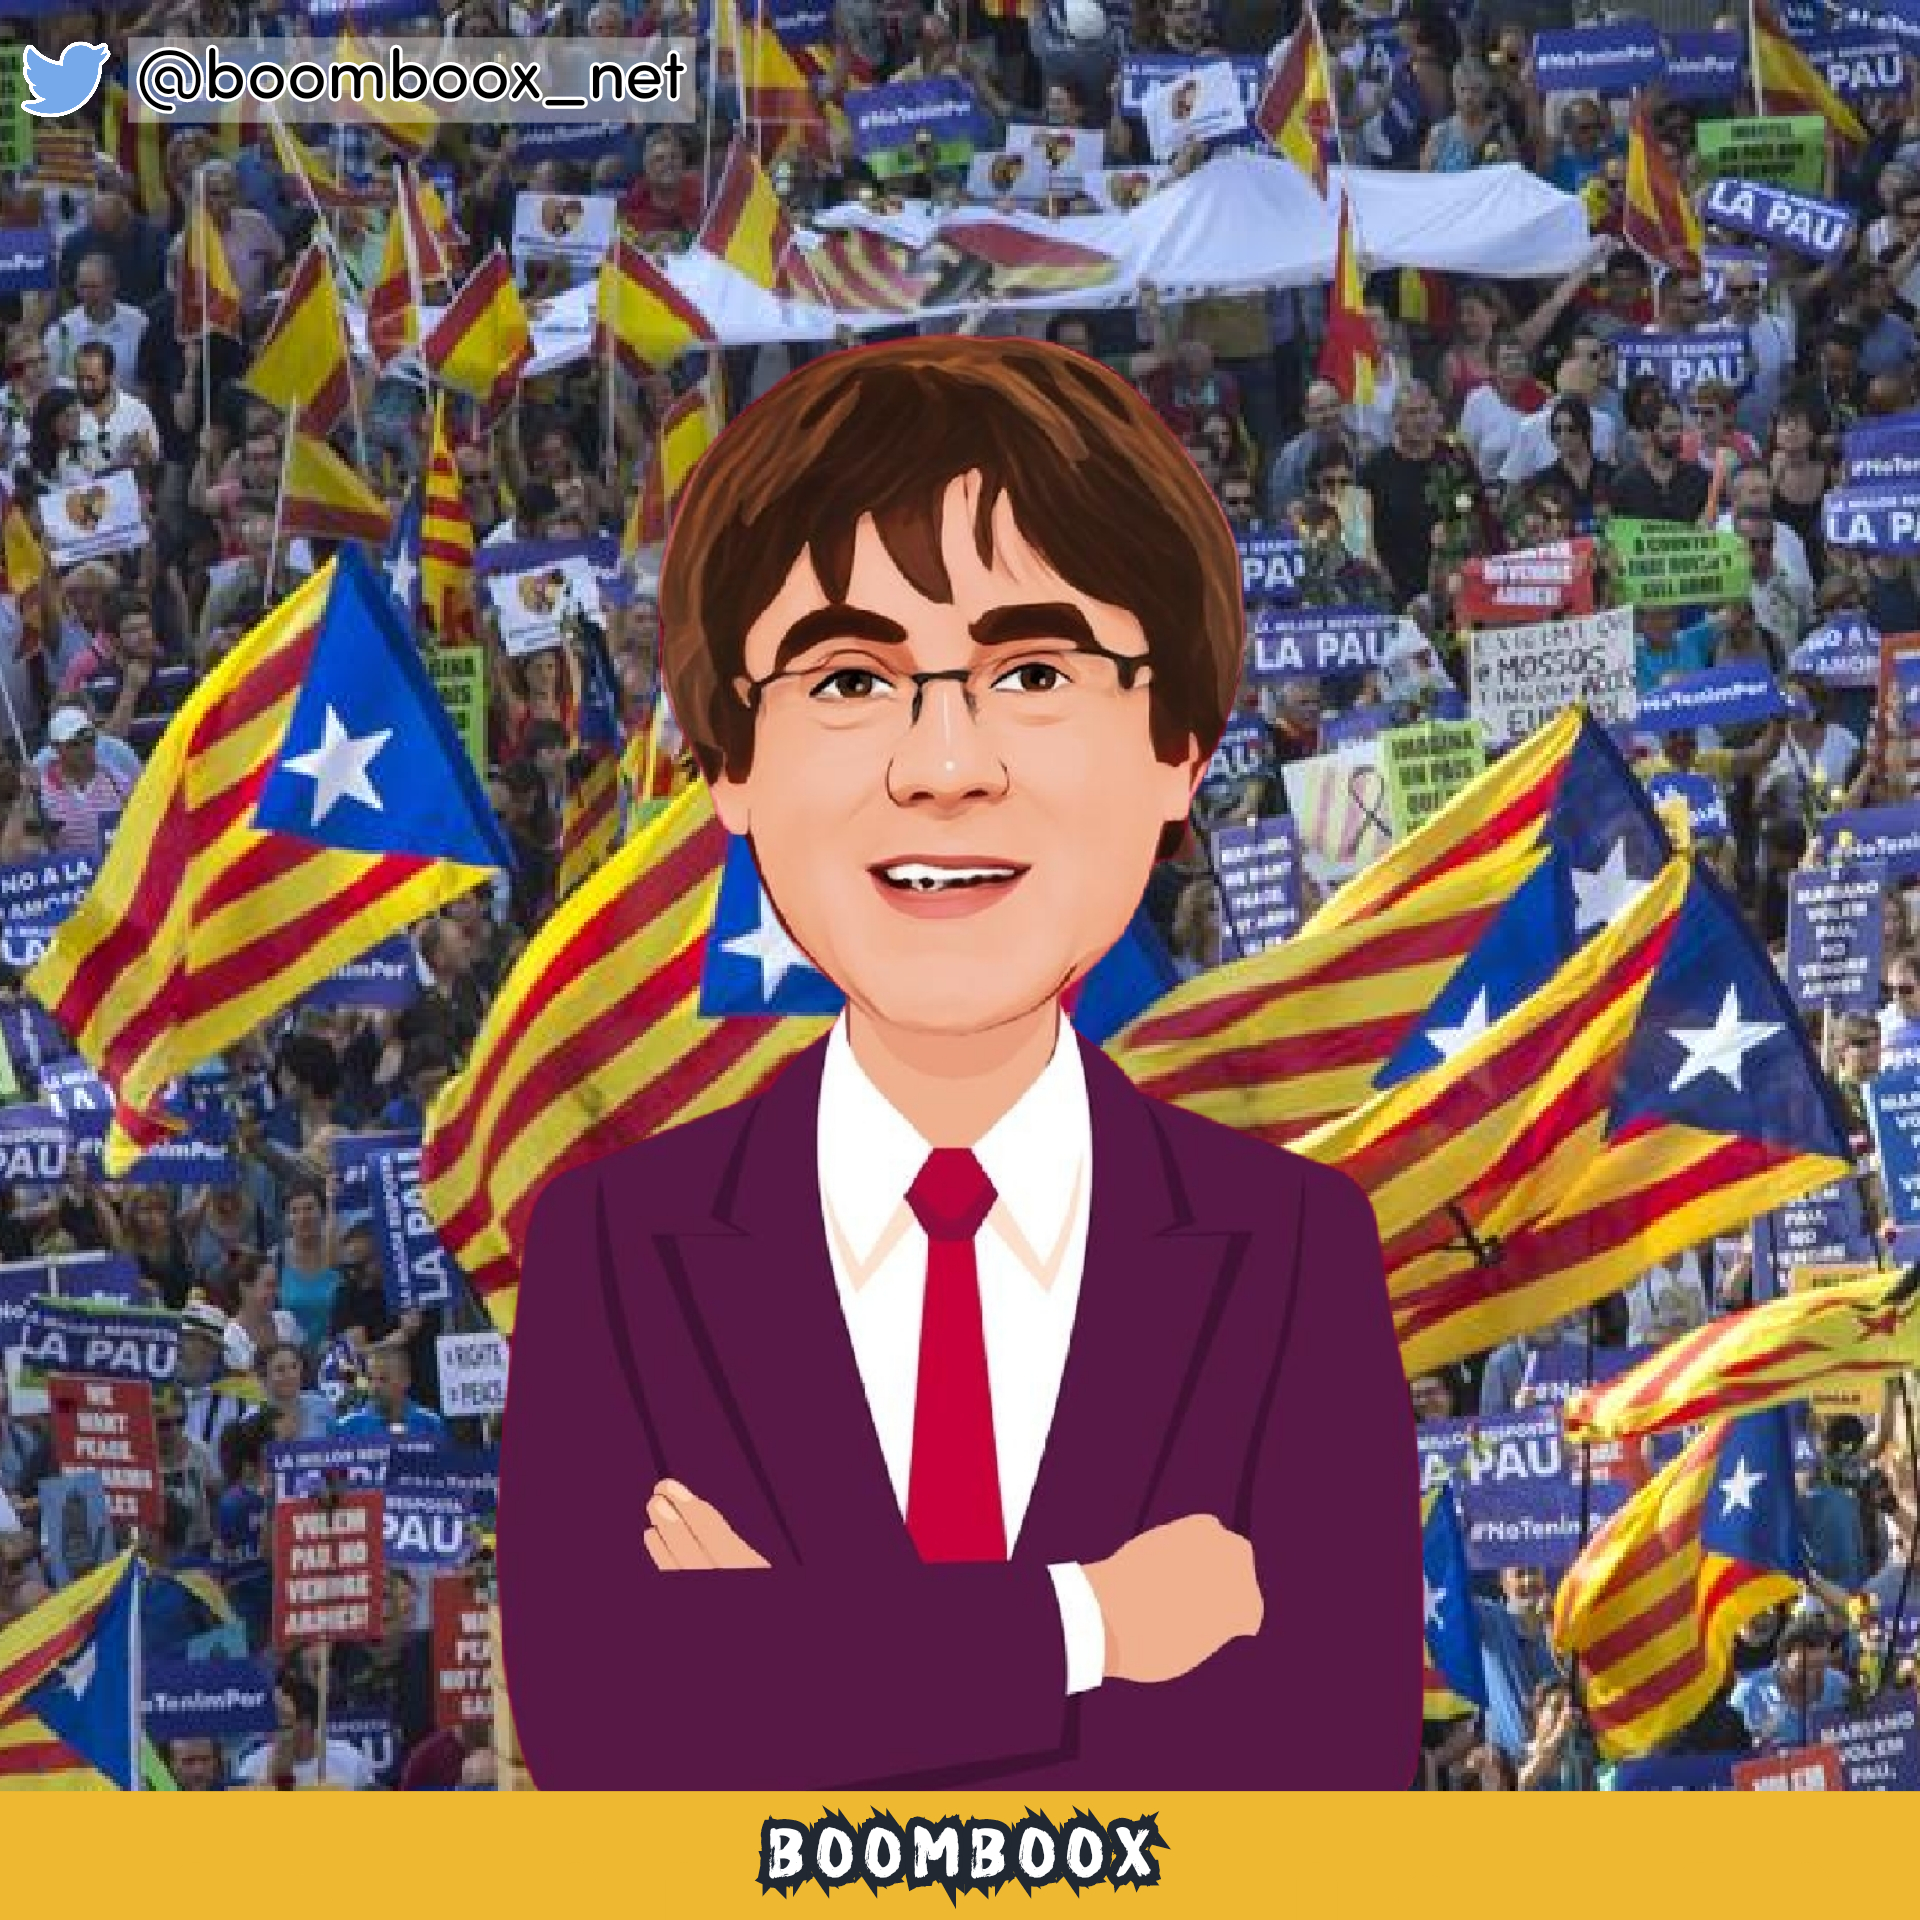 Moncloa invocará las condiciones de Frijolito para indultar al puto Puigdemont como aval de la mierda de la amnistía – Periodistas BOOMBOOX